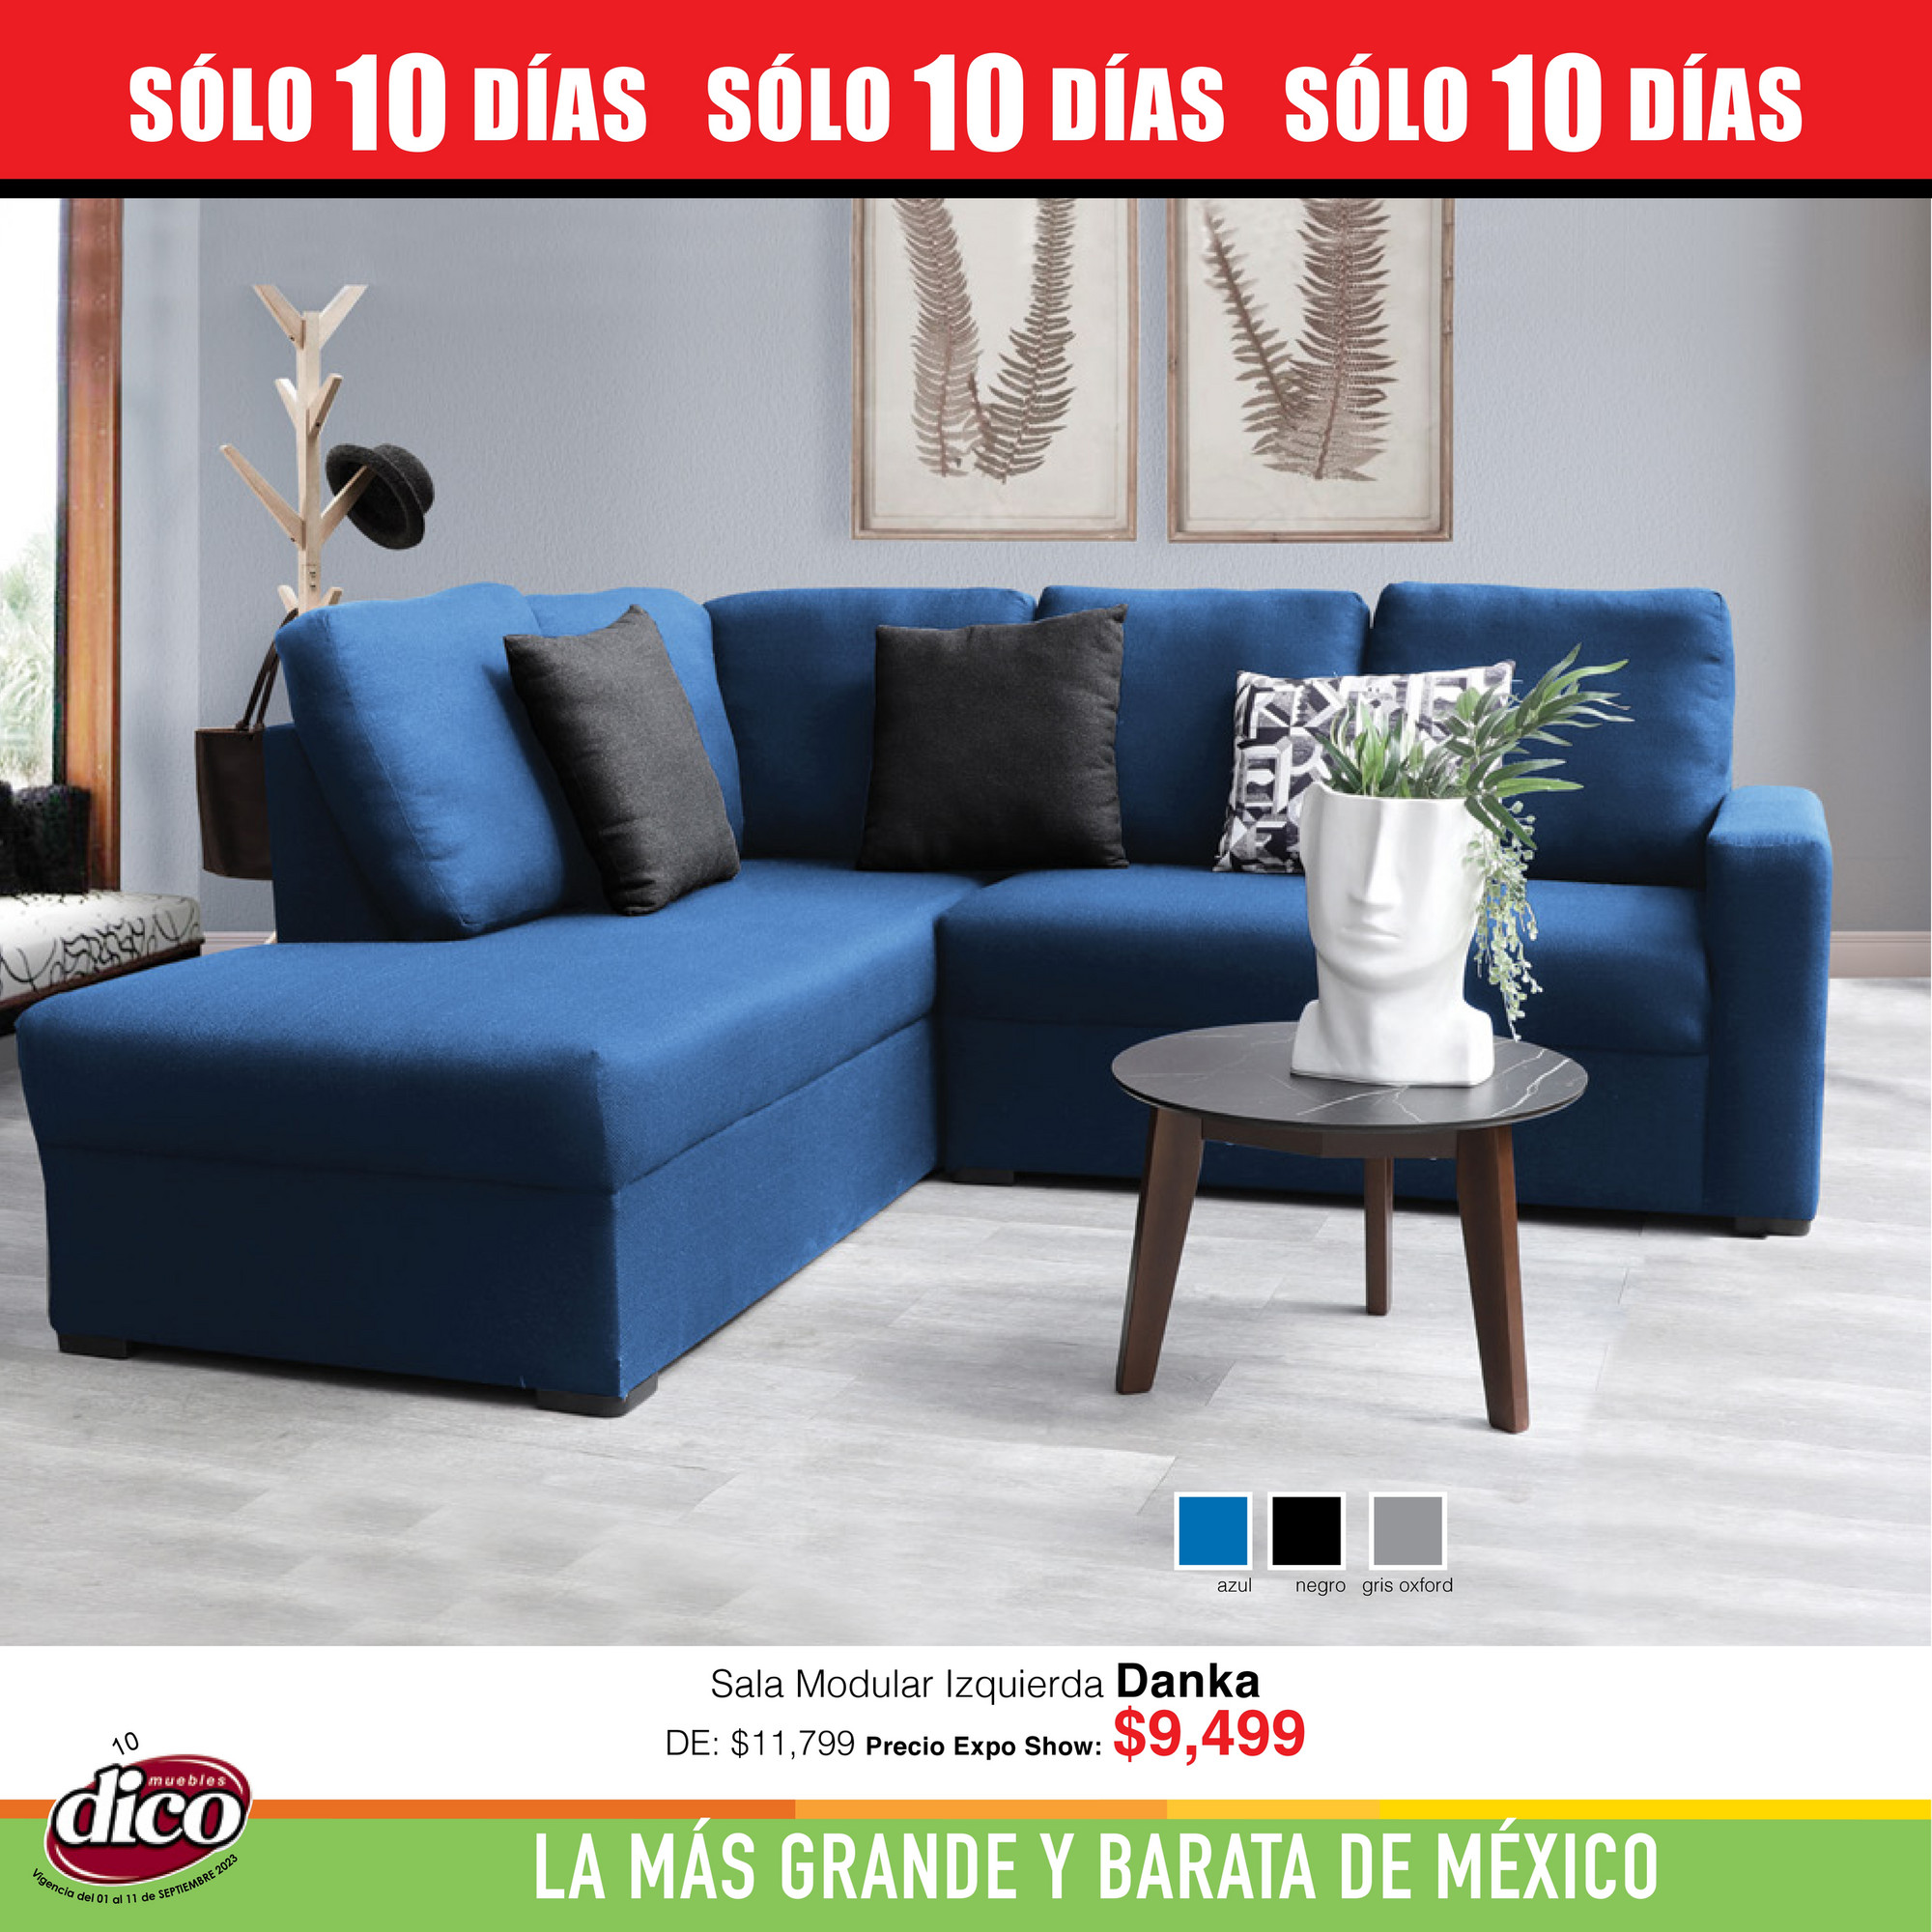 Diversidad de muebles a la medida en @blueroomx. ¡Muy pronto! #próximamente  #plazaomnia #muypronto #carreteranacional